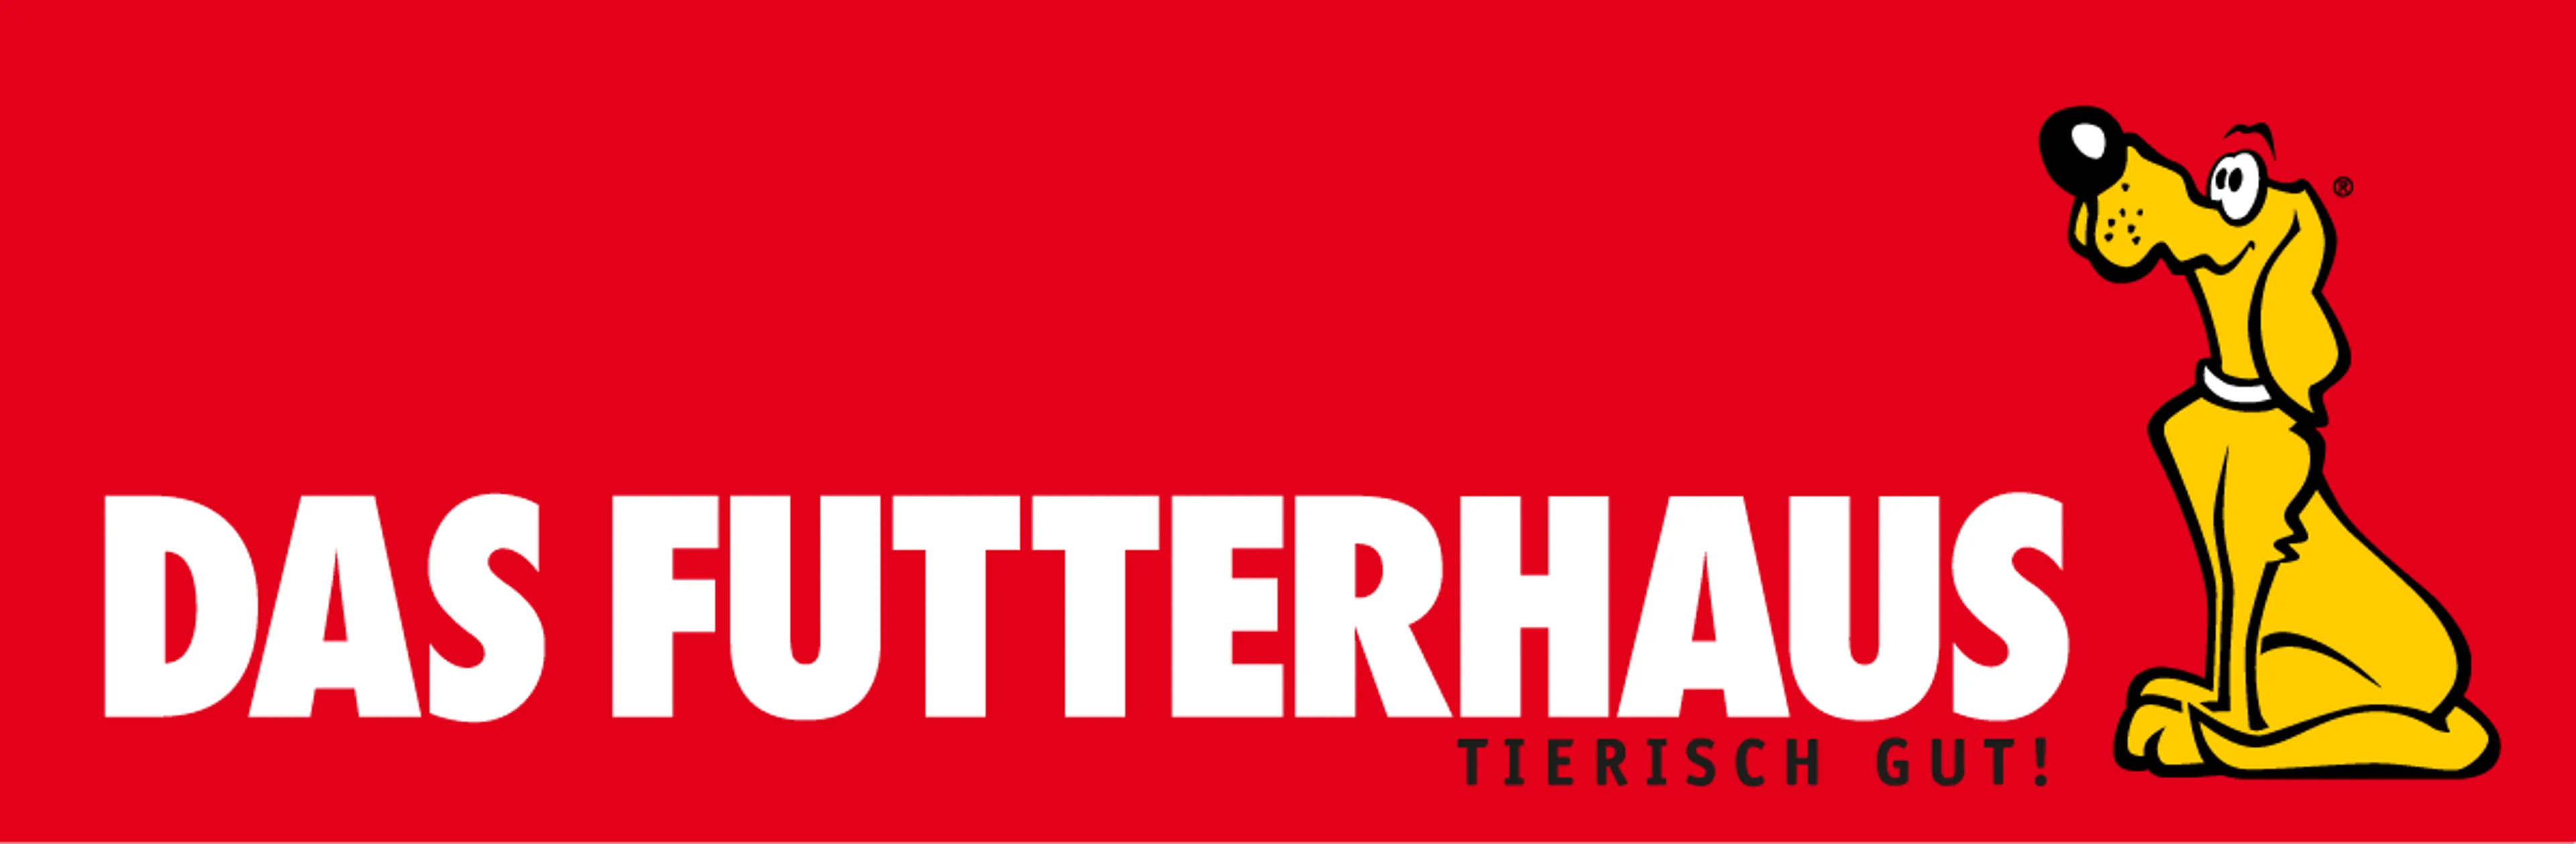 FUTTERHAUS logo